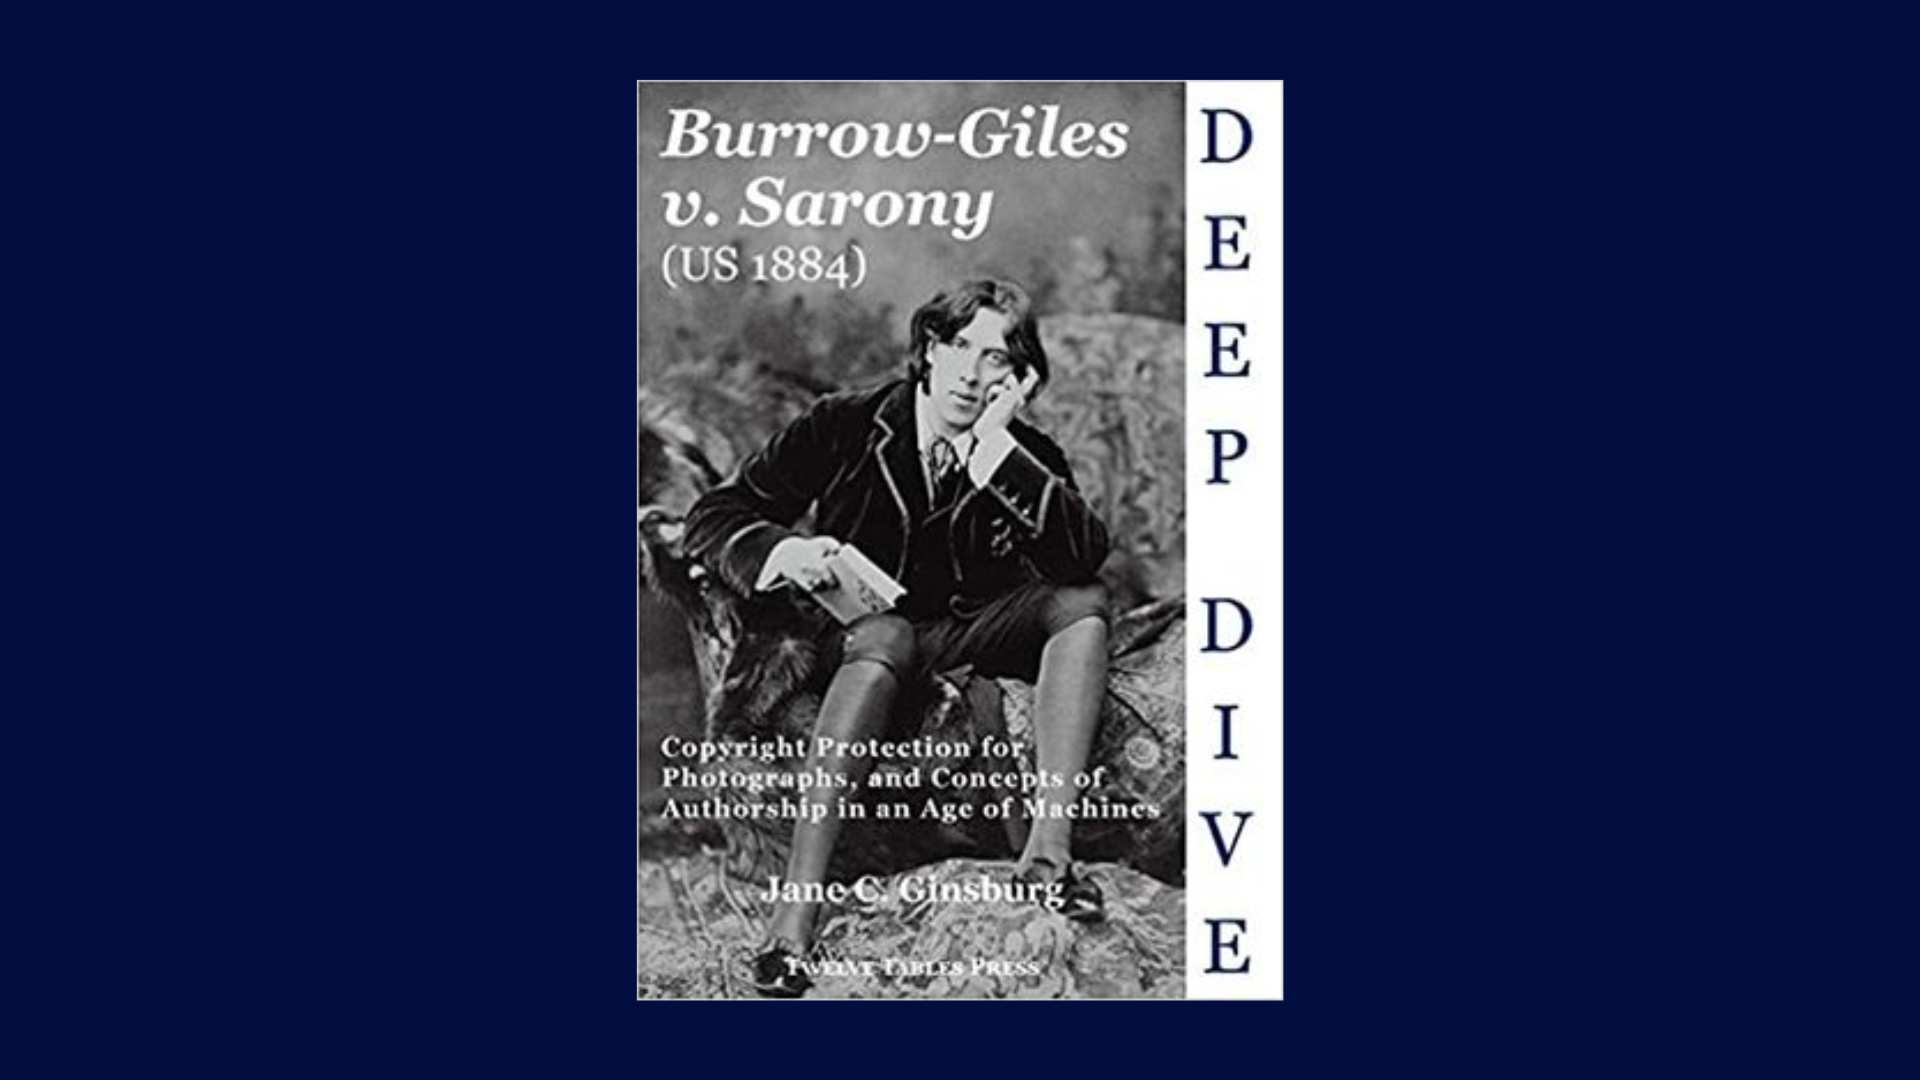 Burrow-Giles Lithographic Company v. Sarony